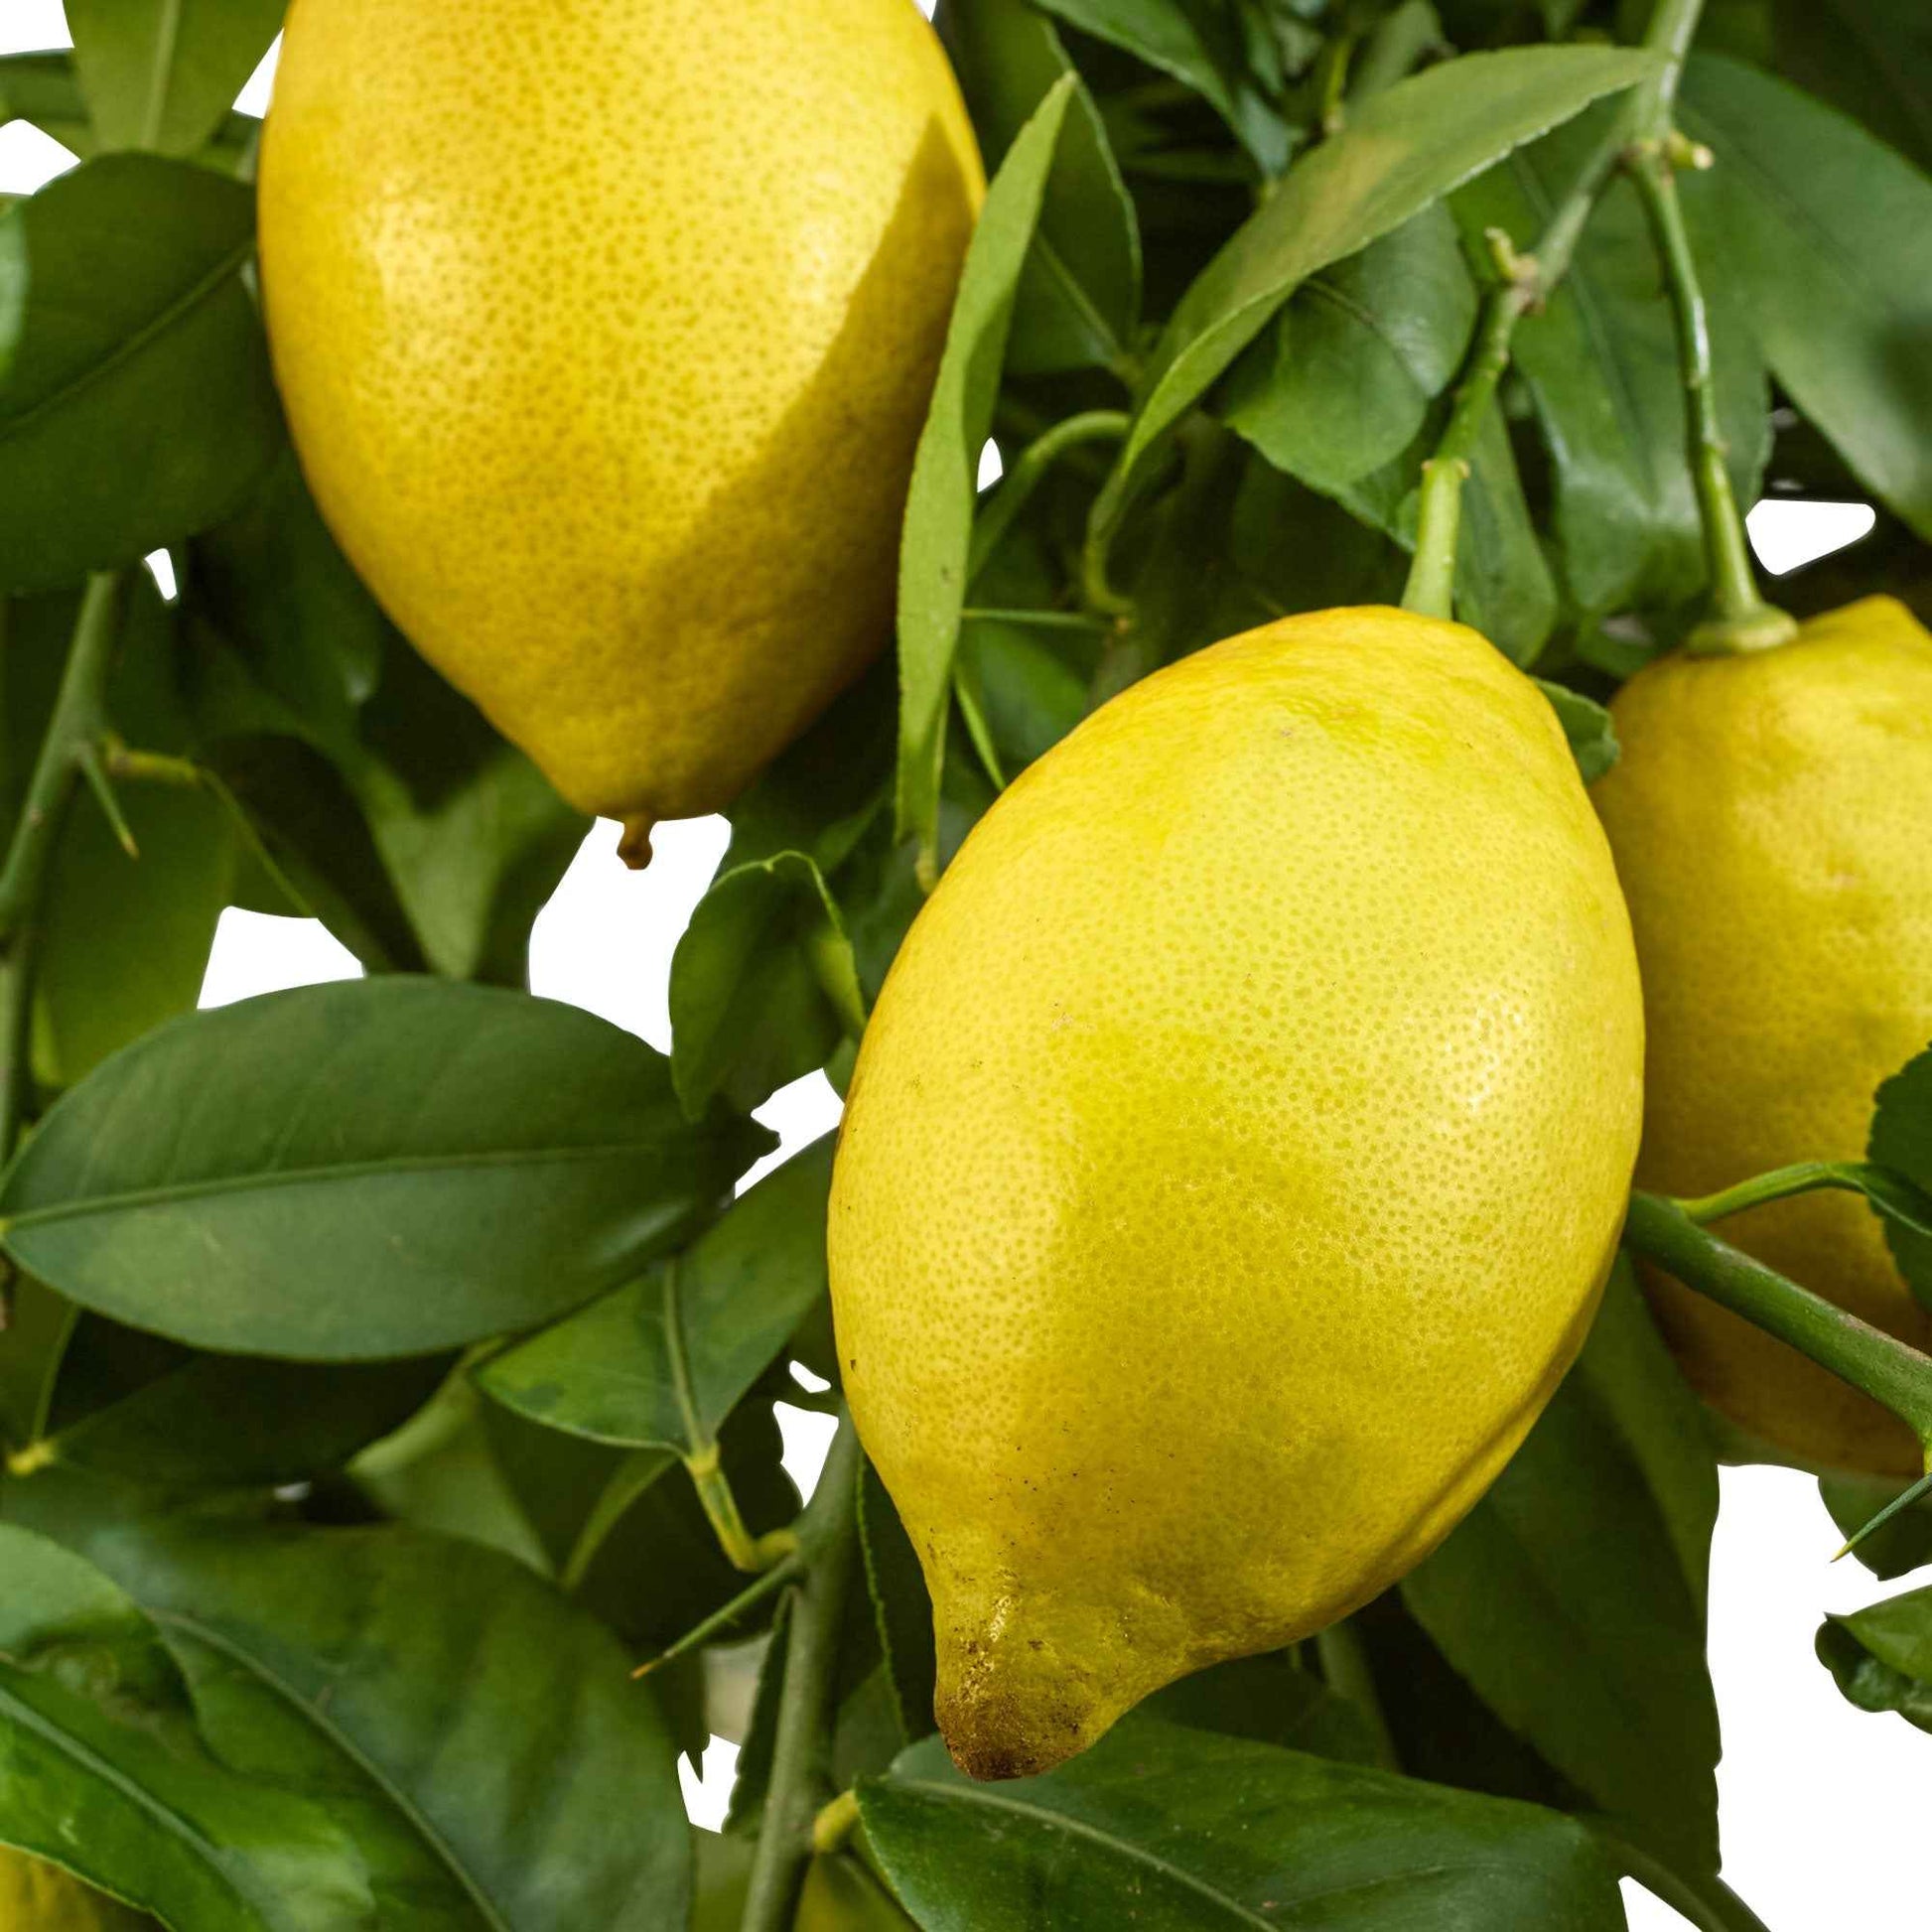 Zitronen-Bäumchen 'Vulcan' - Citrus limon vulcan - Obstbäume